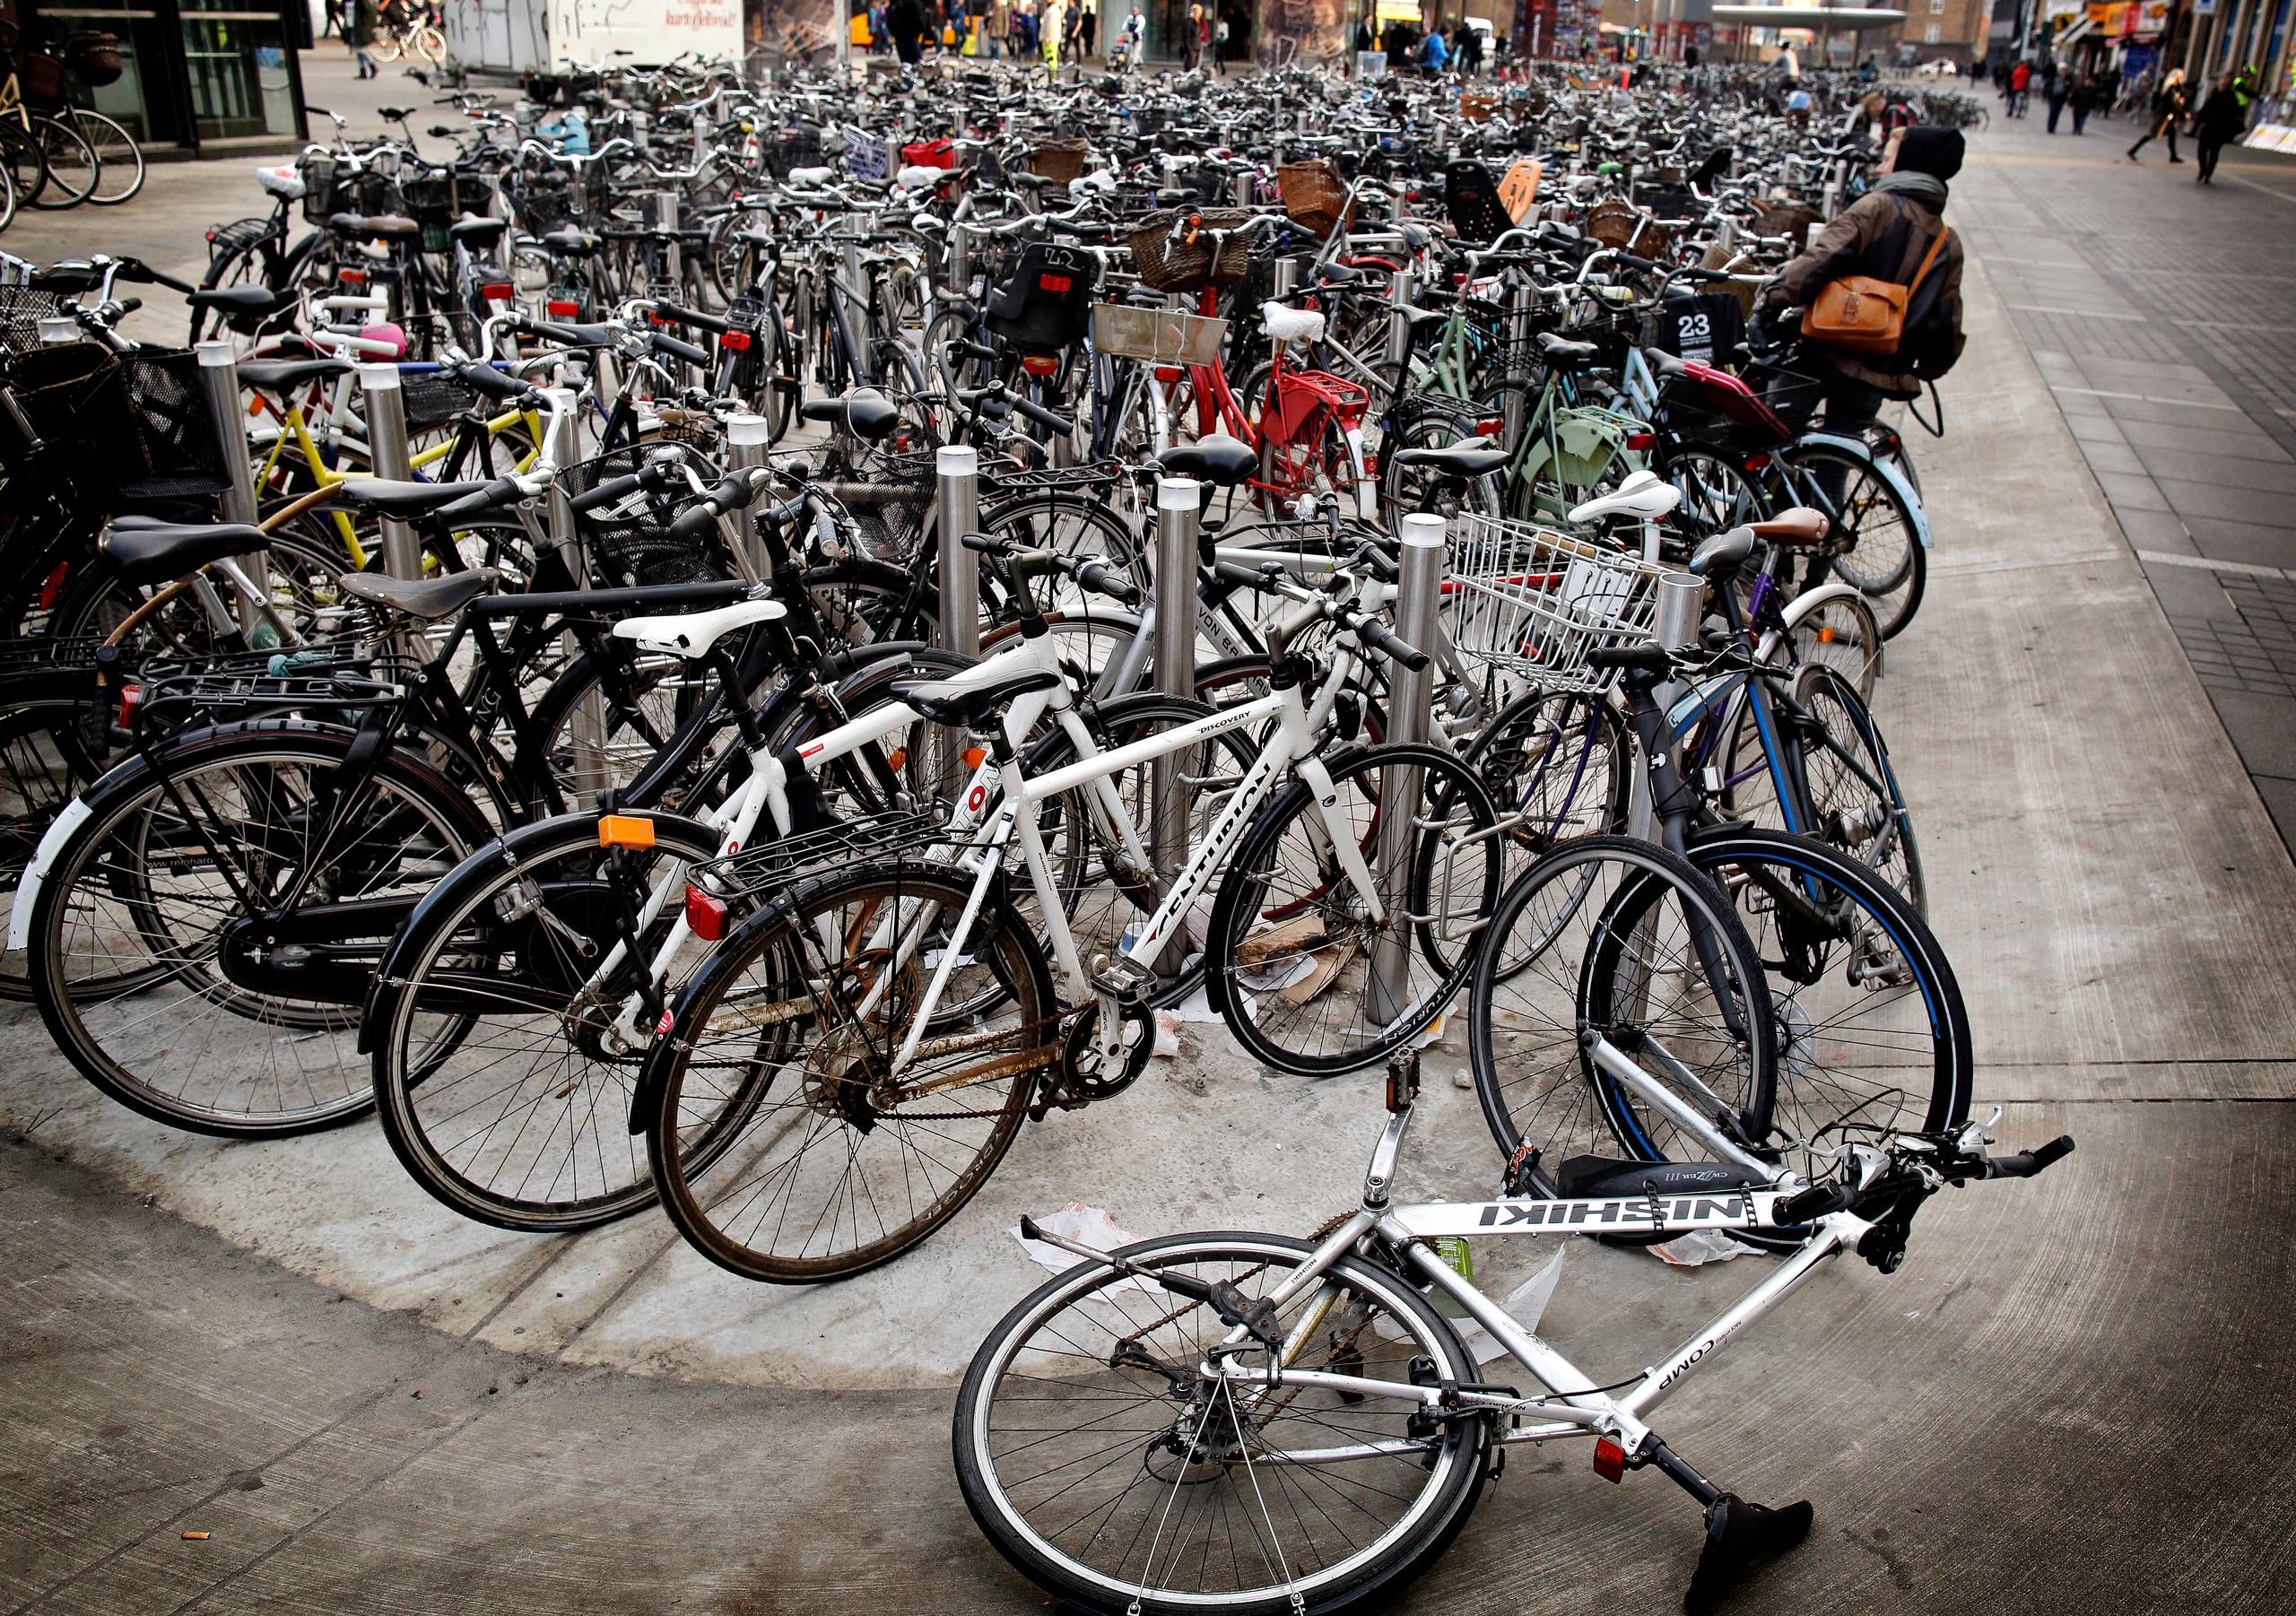 Cykler Fritid er gået konkurs